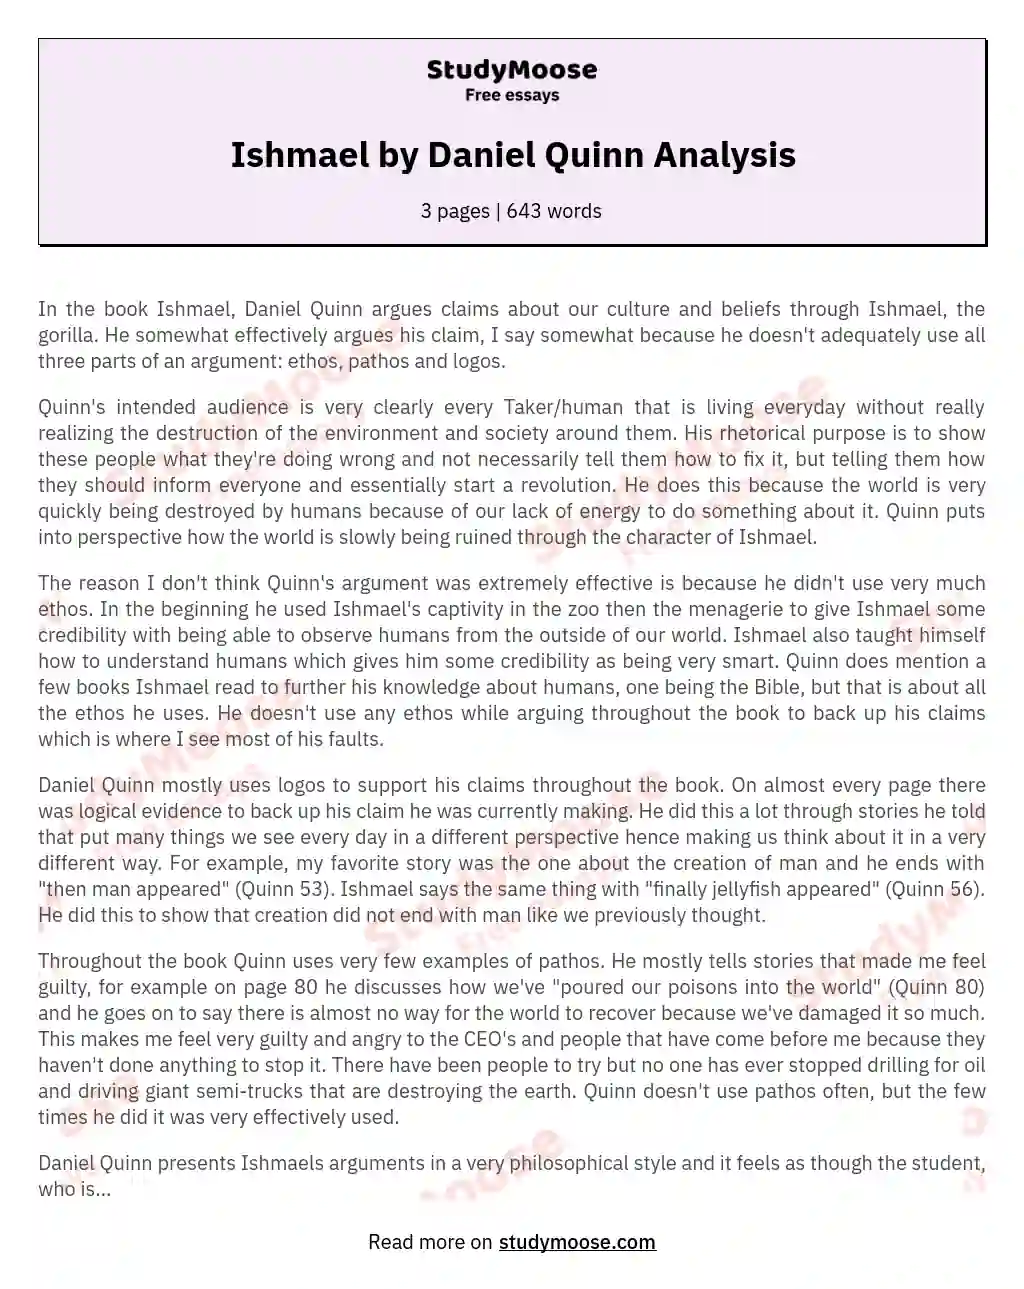 Ishmael by Daniel Quinn Analysis essay